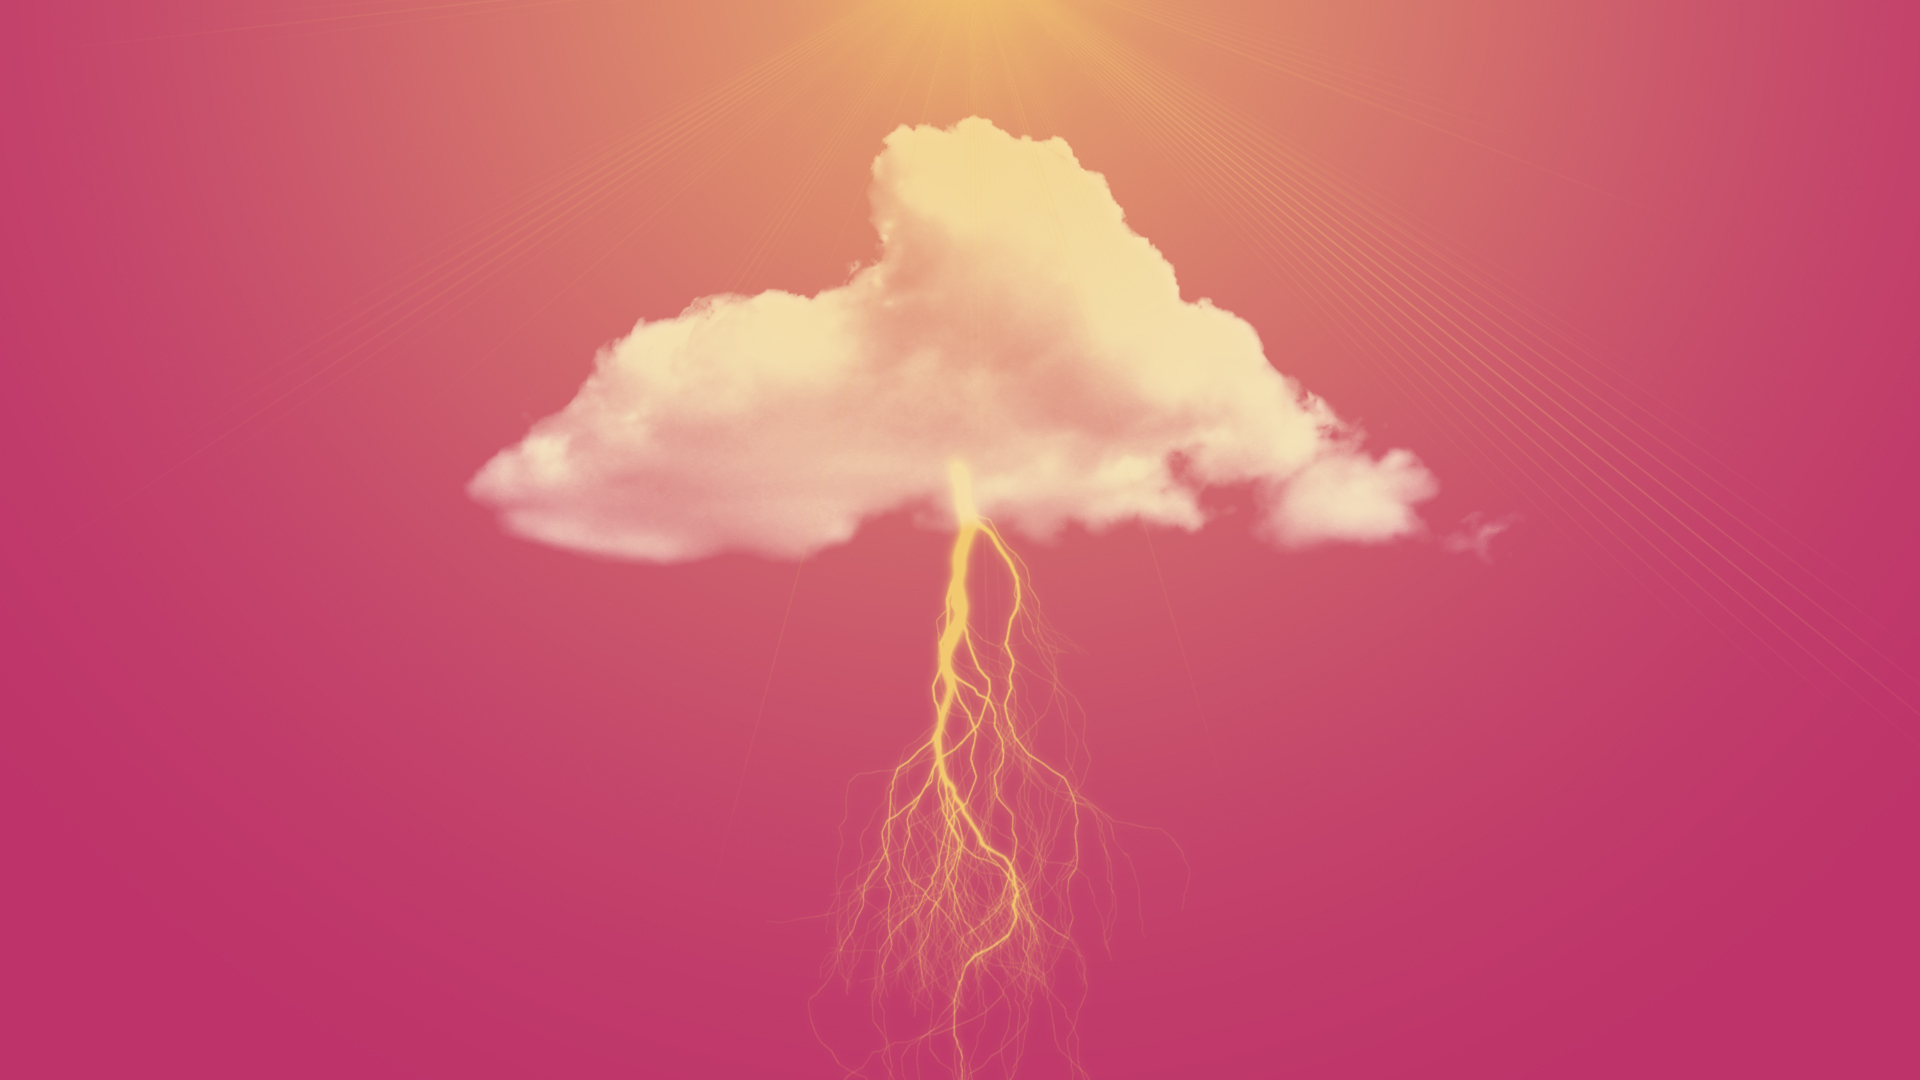 General 1920x1080 pink clouds lightning minimalism sun rays digital art